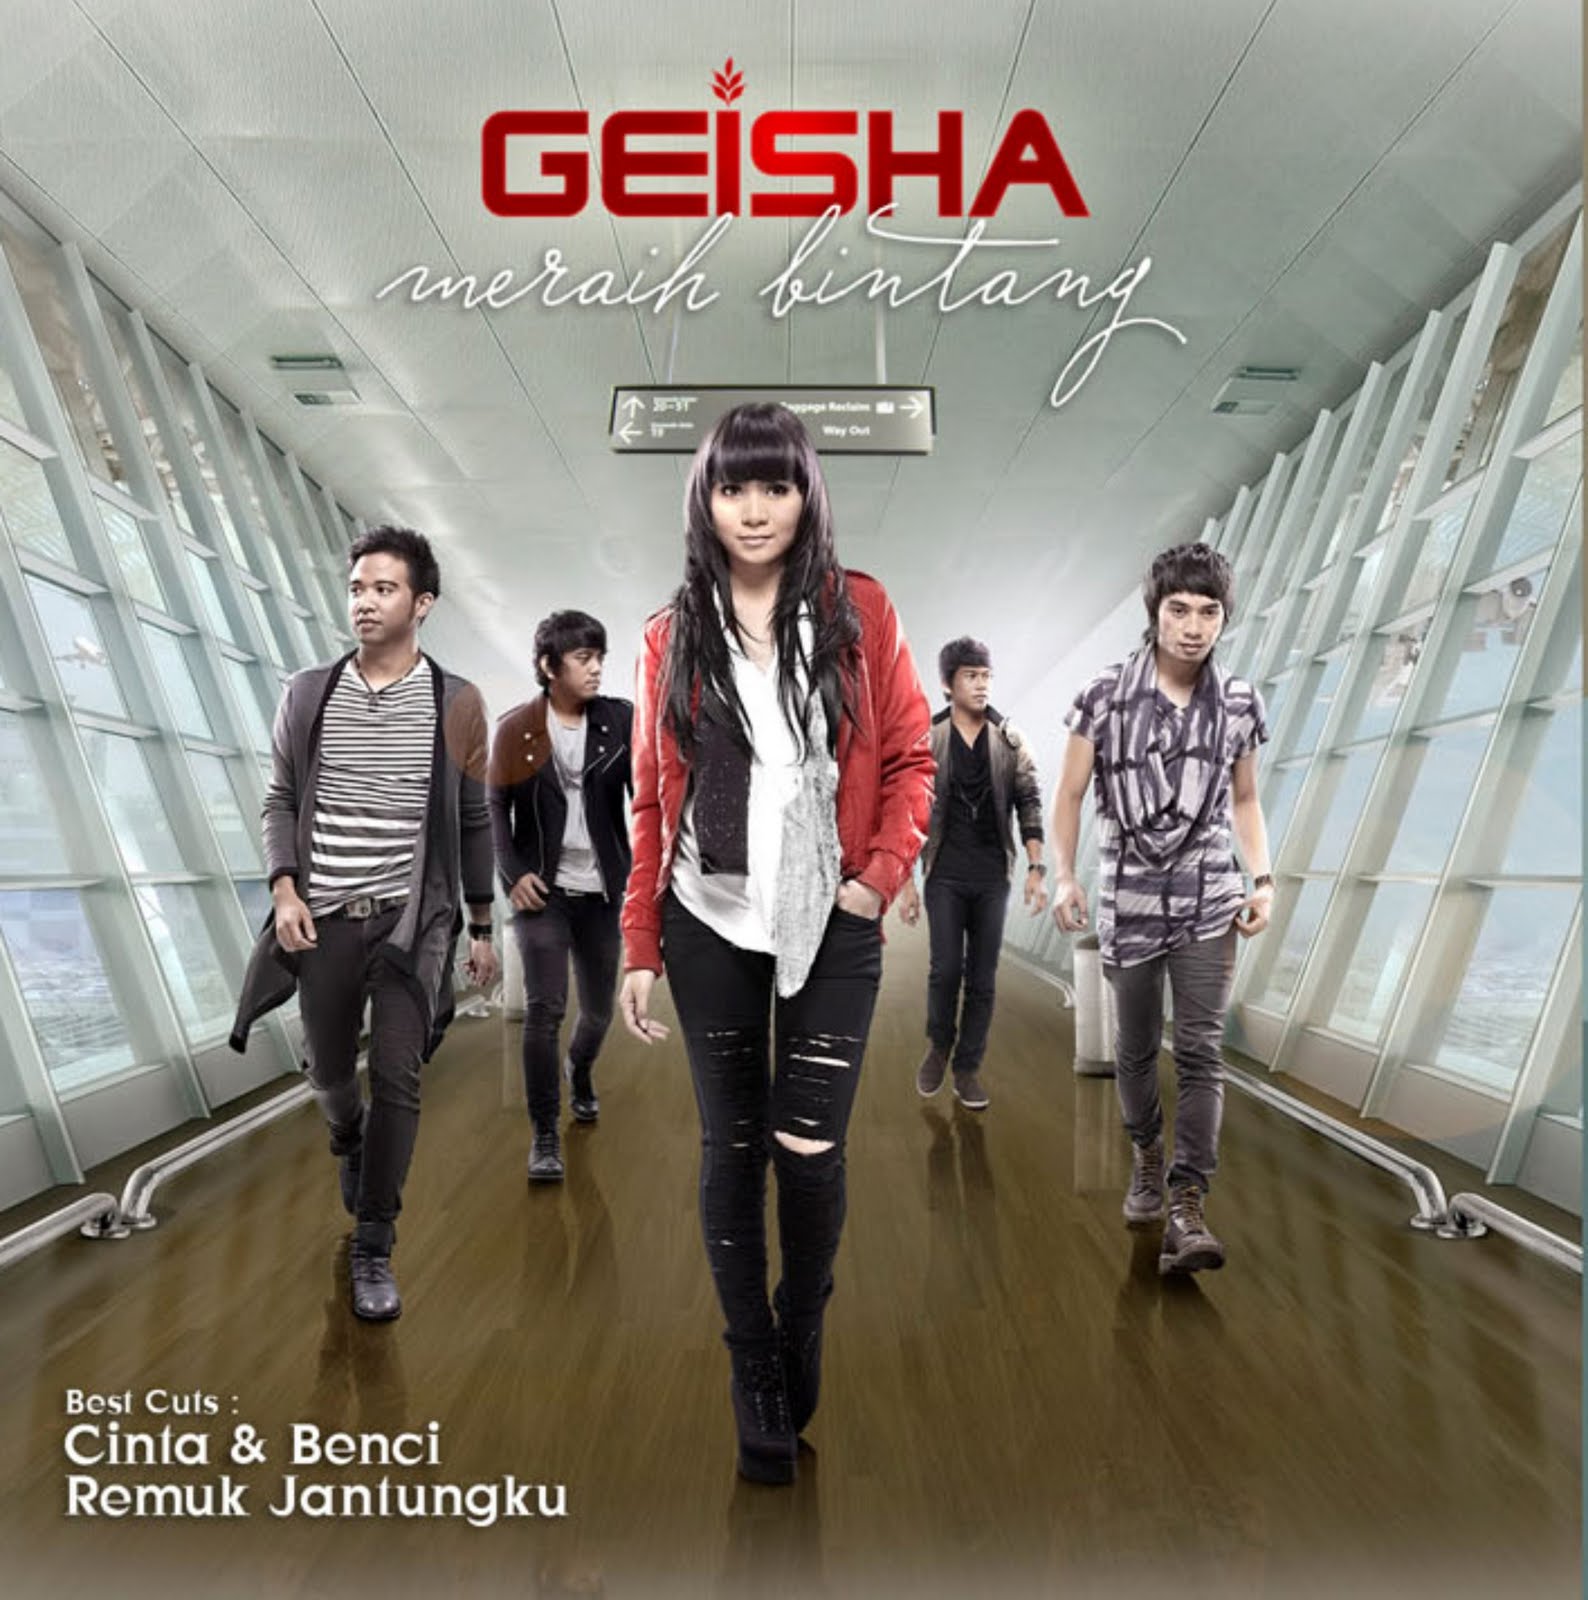 Geisha merupakan sebuah grup musik asal Kota Pekanbaru Riau Indonesia yang dibentuk pada tahun 2003 Grup musik ini beranggotakan 5 orang yaitu Momo